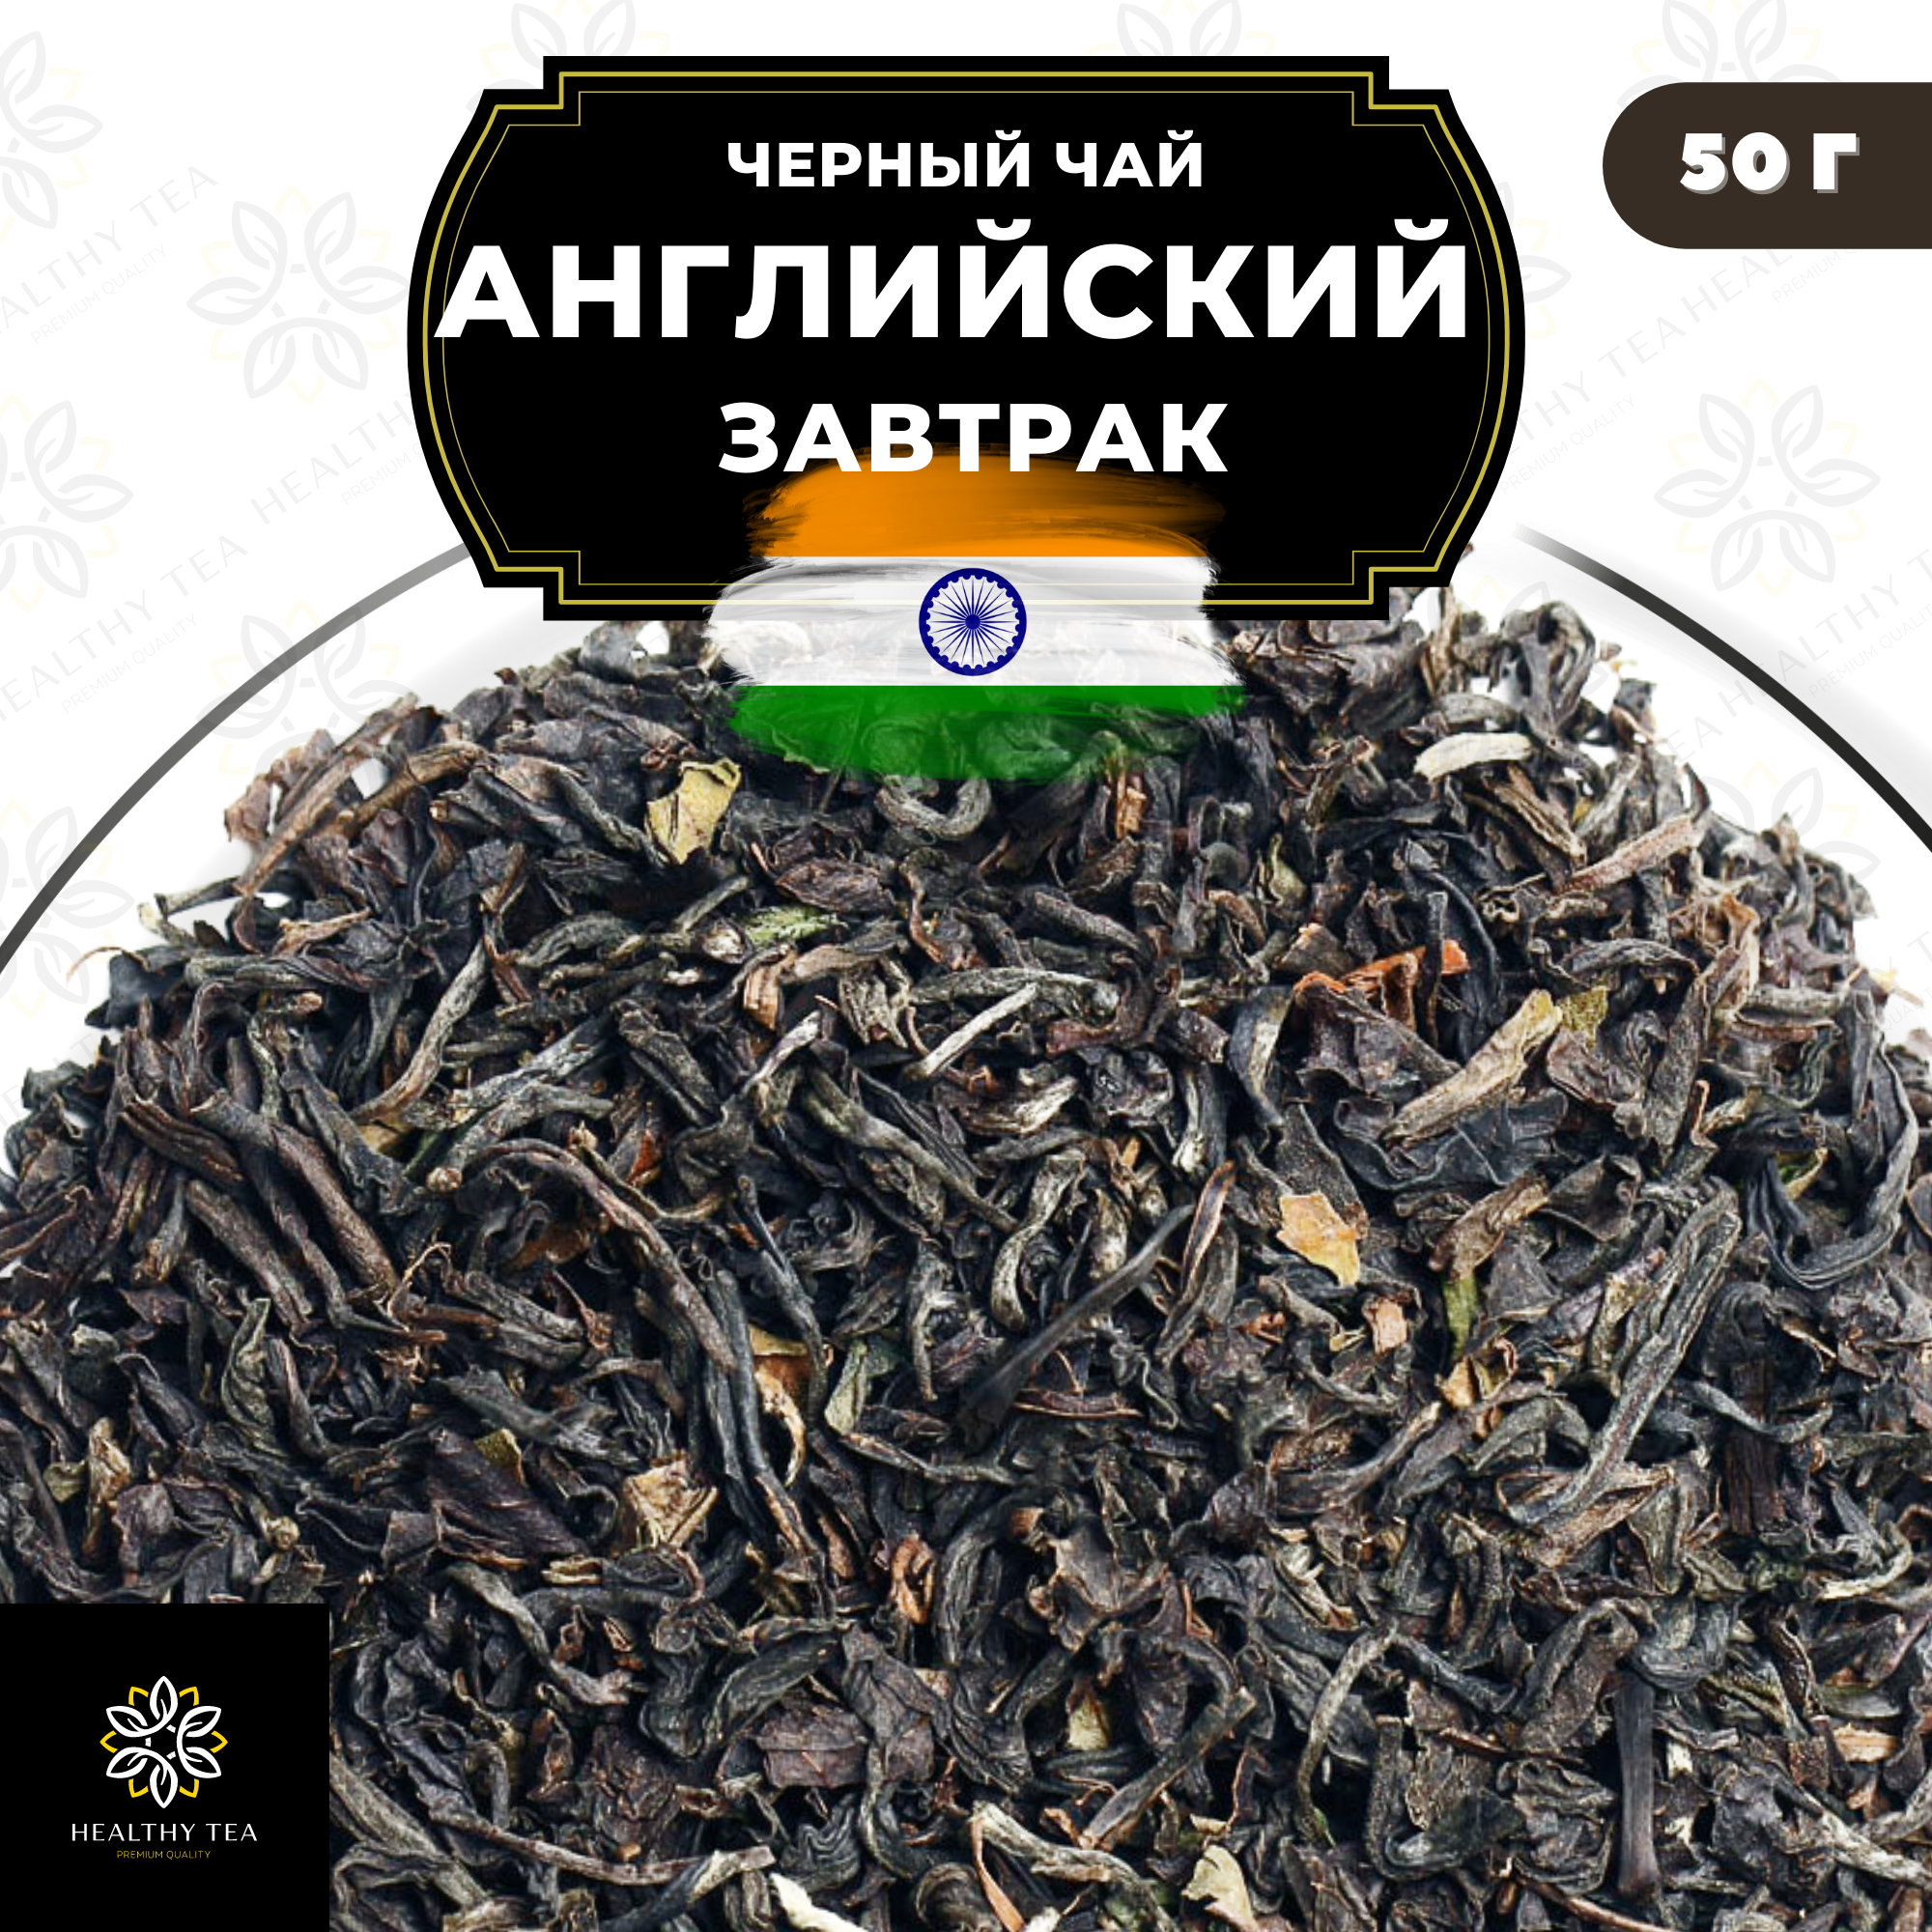 Индийский Черный крупнолистовой чай Ассам "Английский завтрак" Полезный чай / HEALTHY TEA, 50 гр